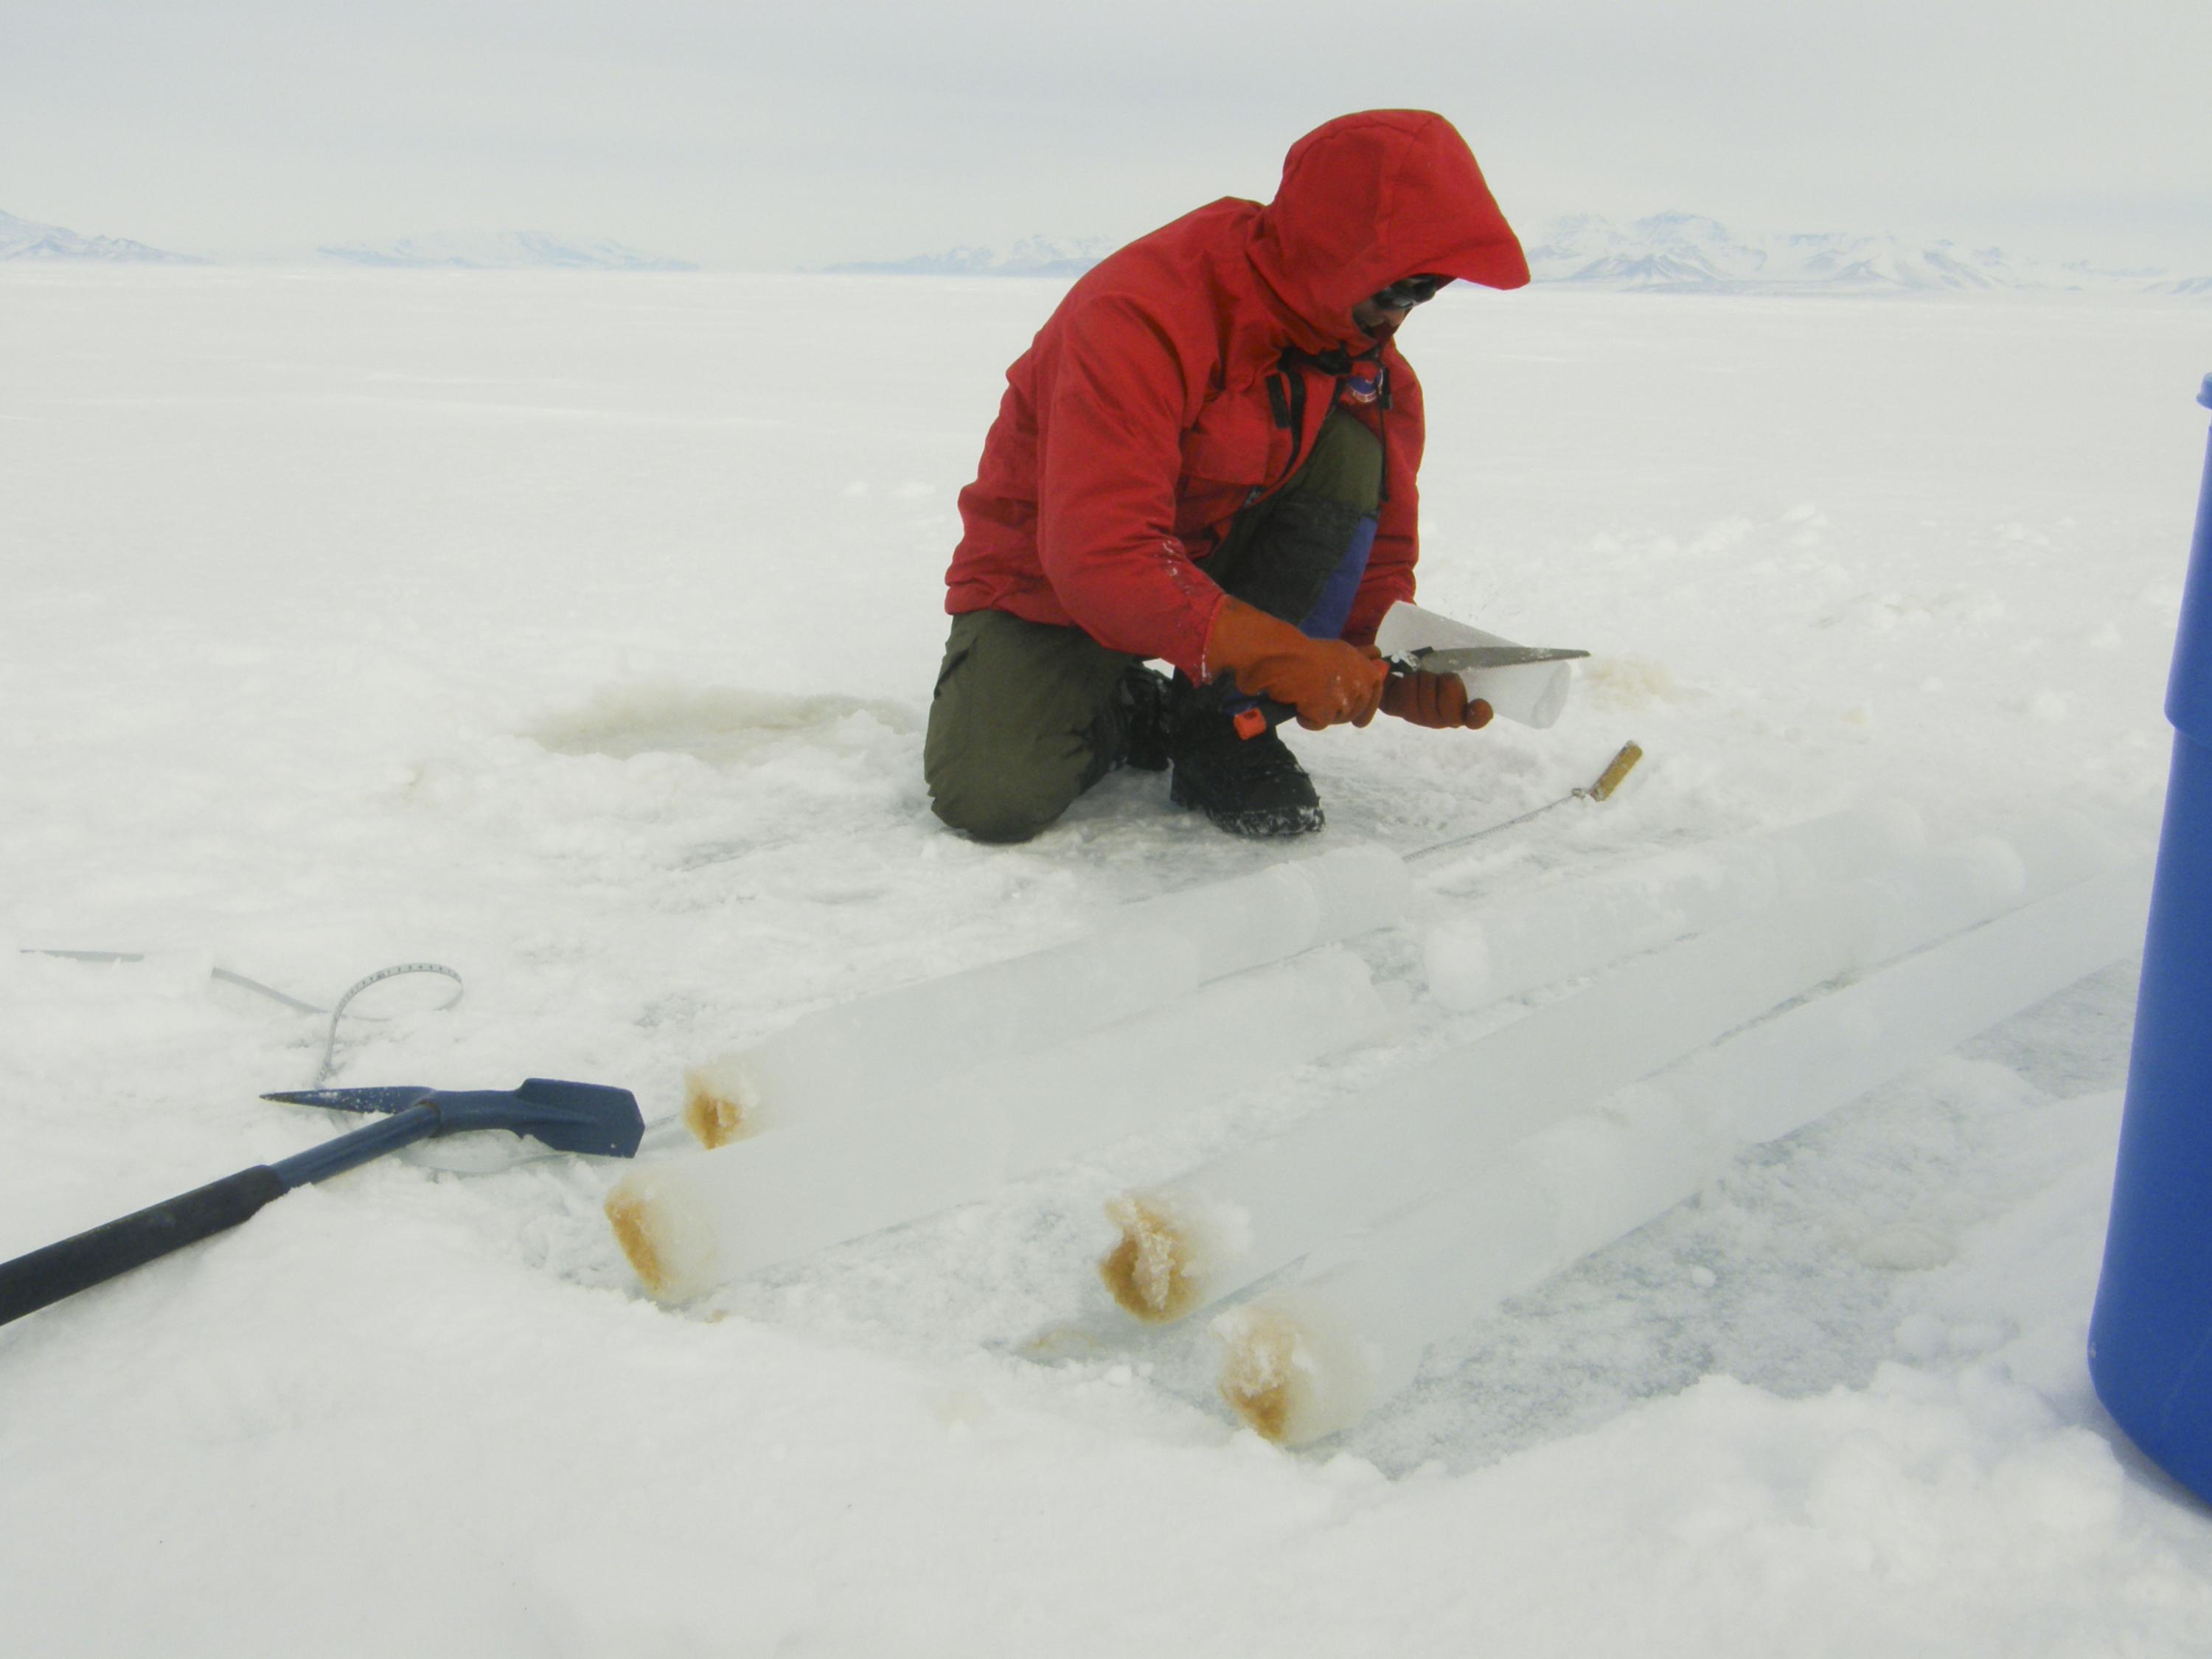 Jeff Bowman of Scripps in Antarctica